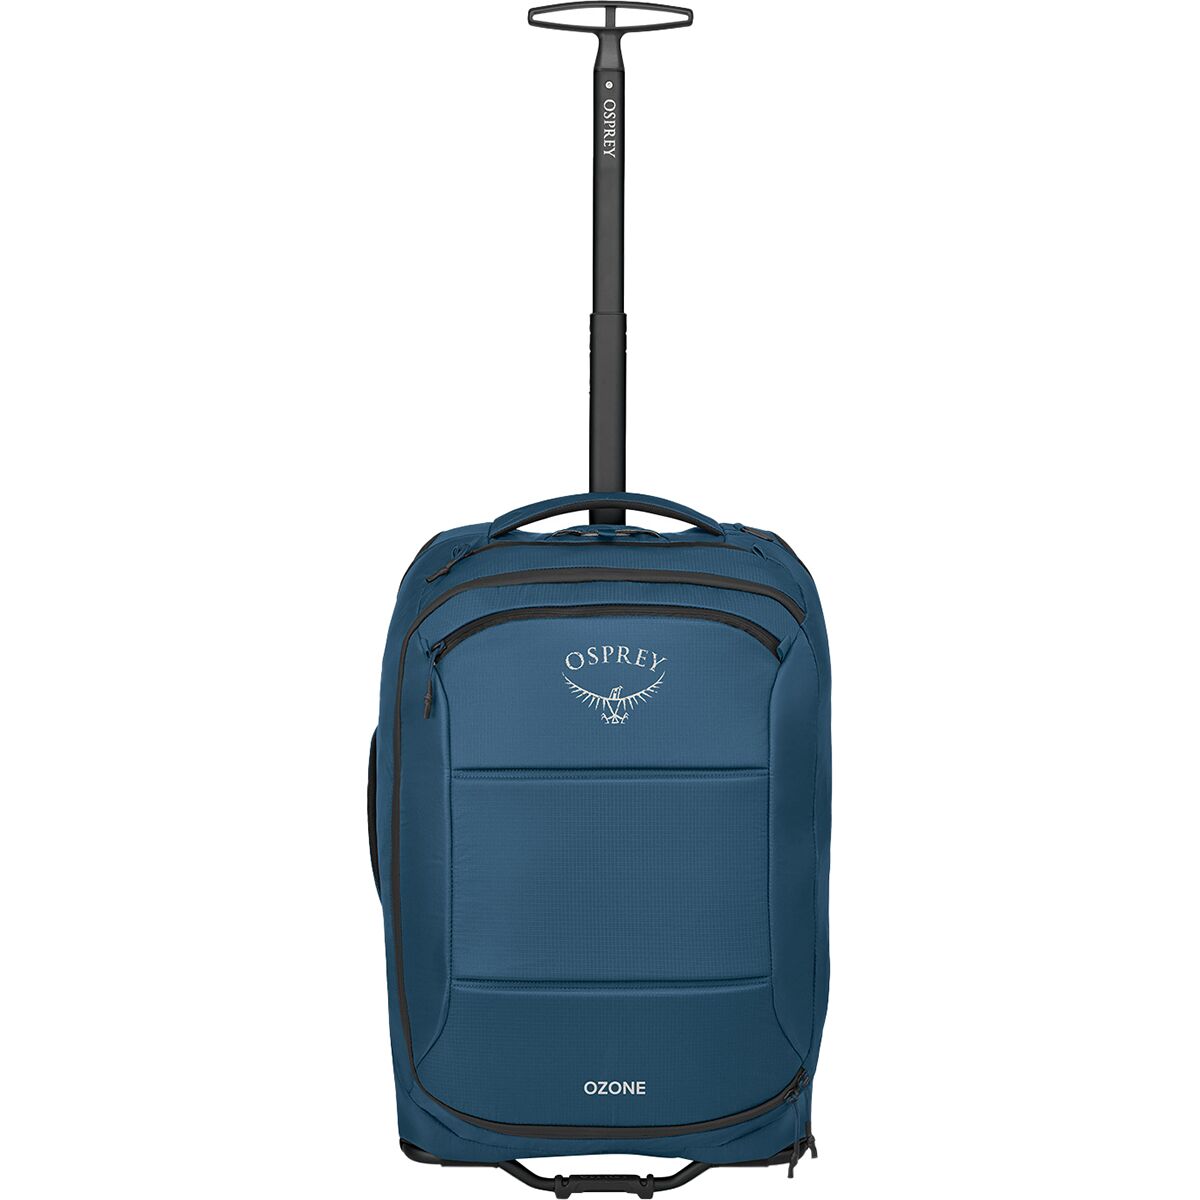 Osprey Packs Ozone 2-Wheel Carry-On Luggage